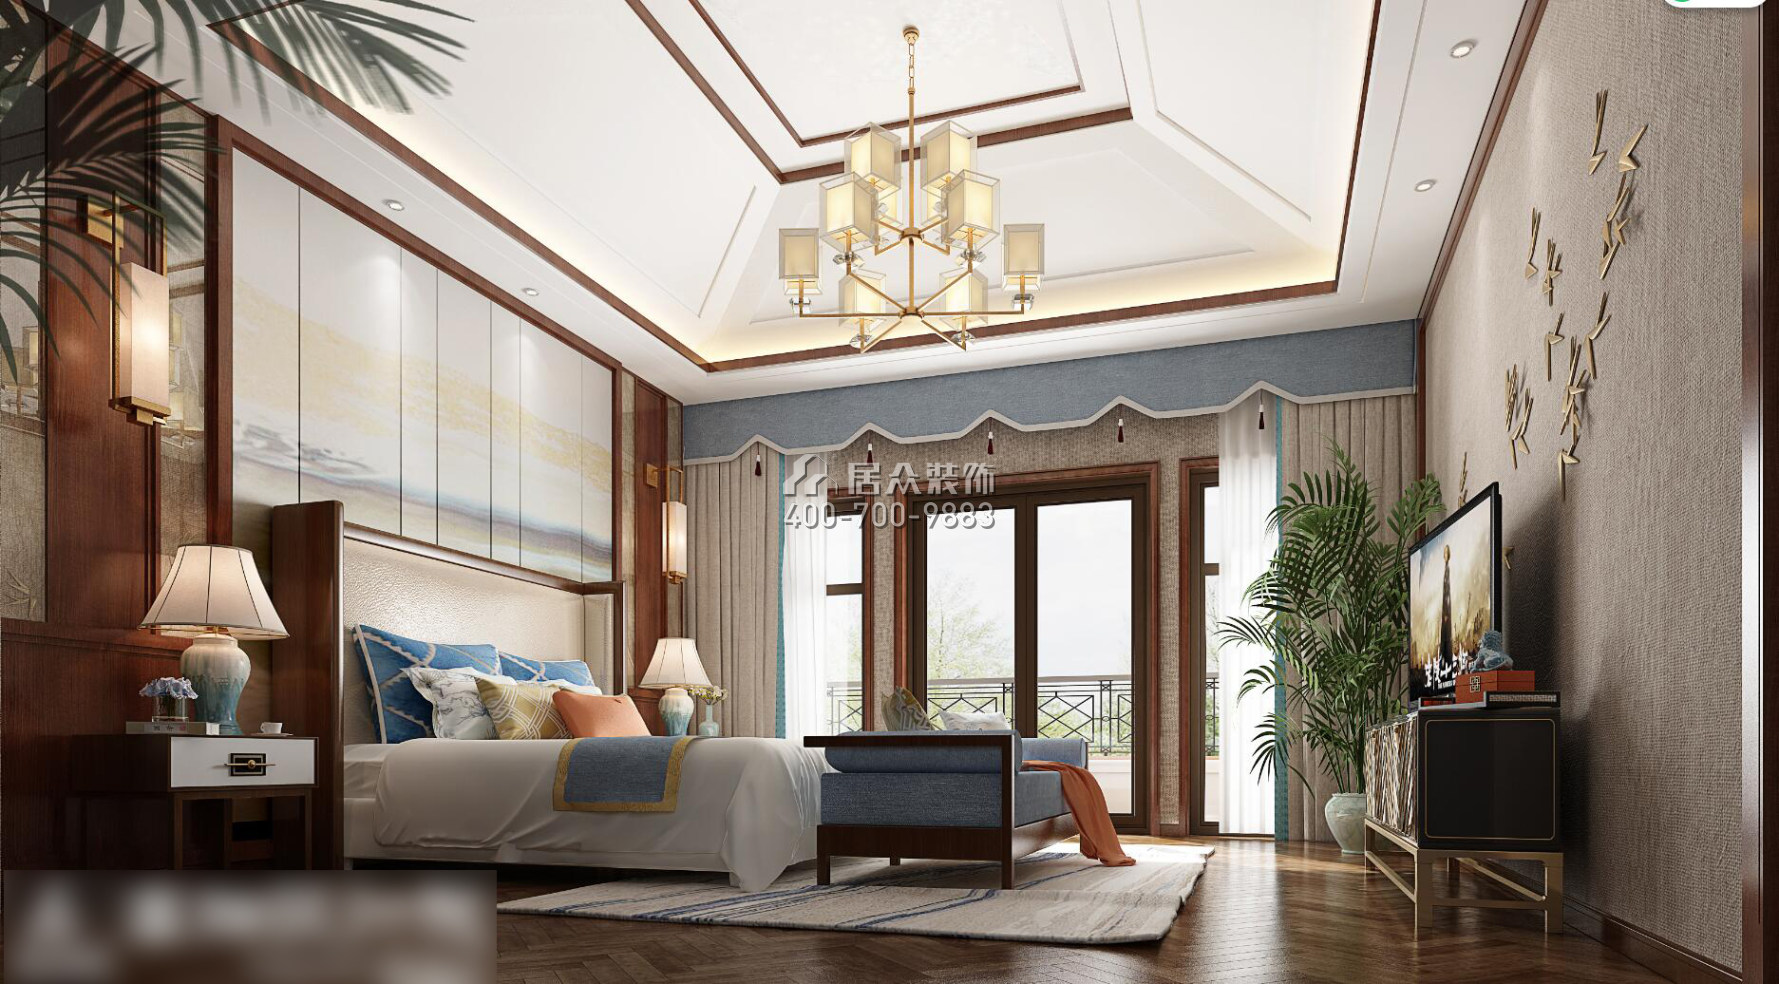 盈峰翠邸500平方米中式风格别墅户型卧室装修效果图